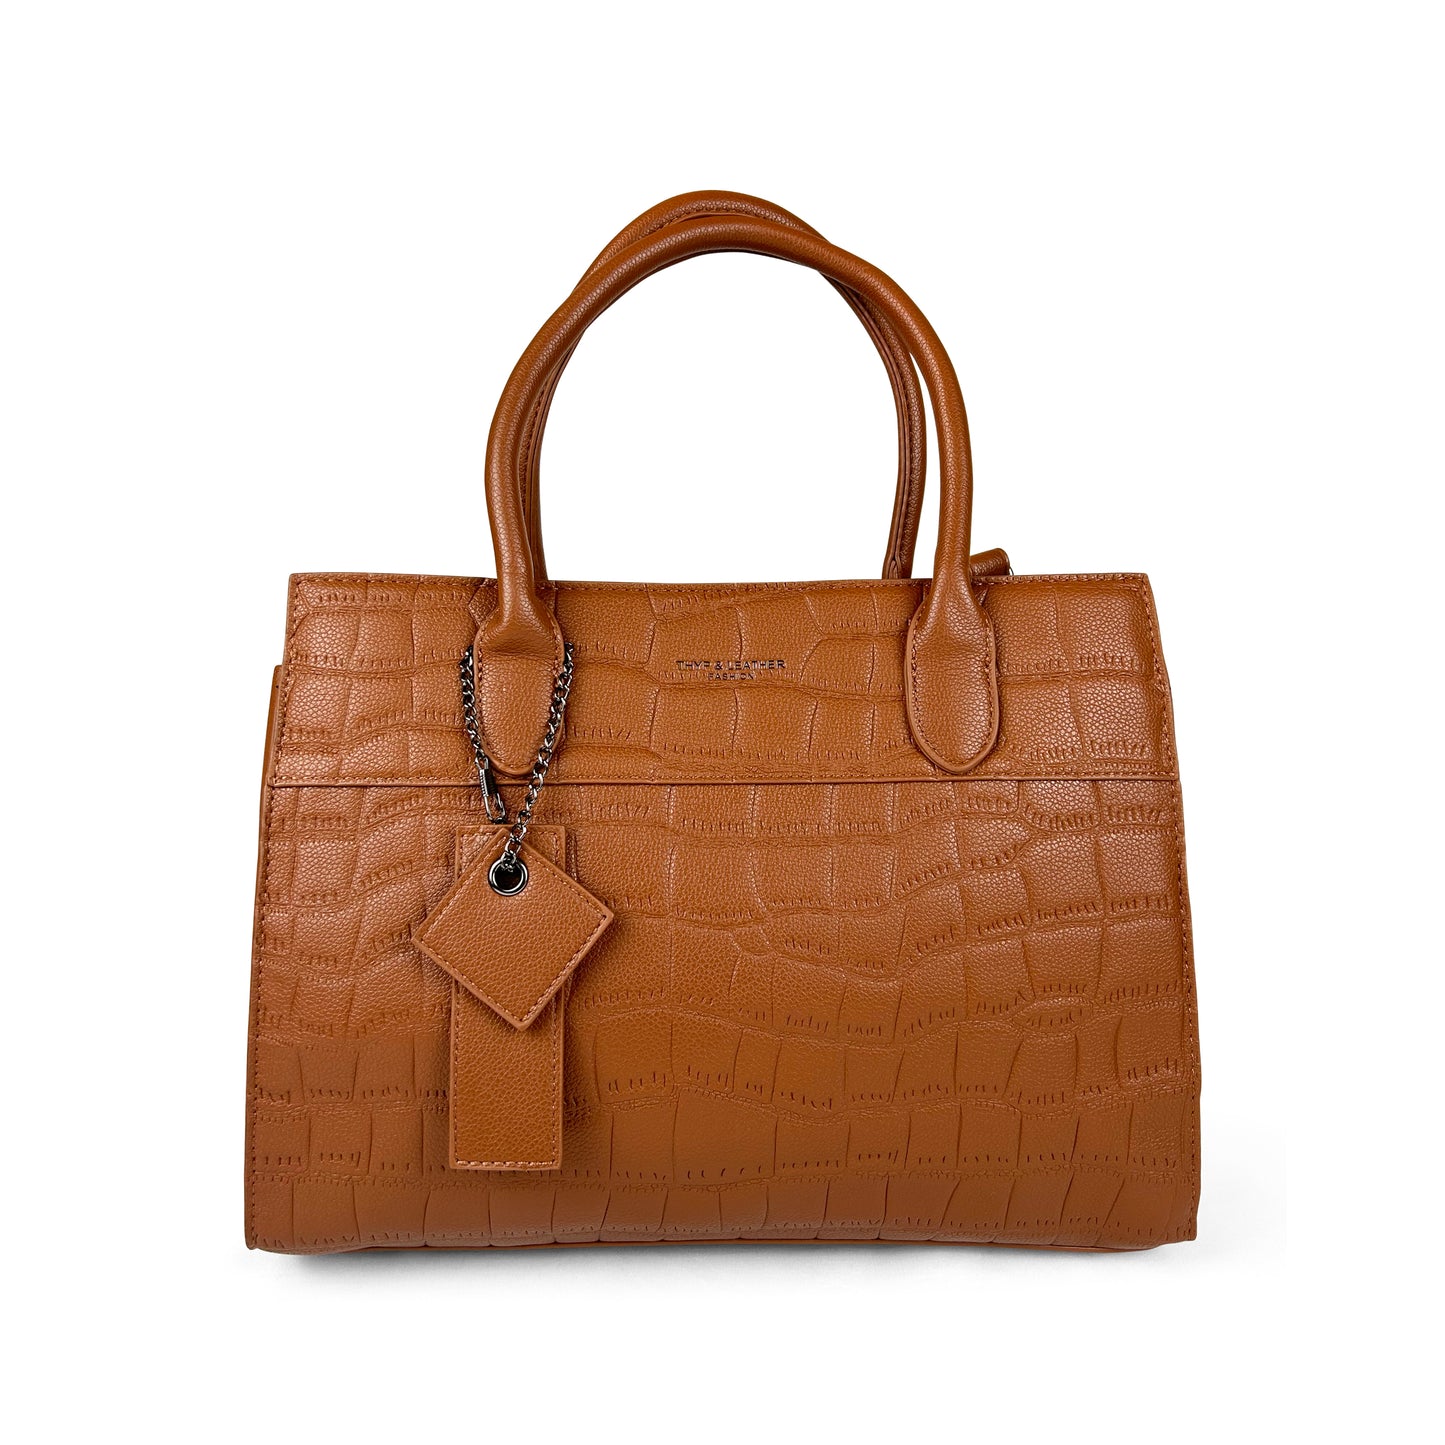 Premium Ladies Handbag 